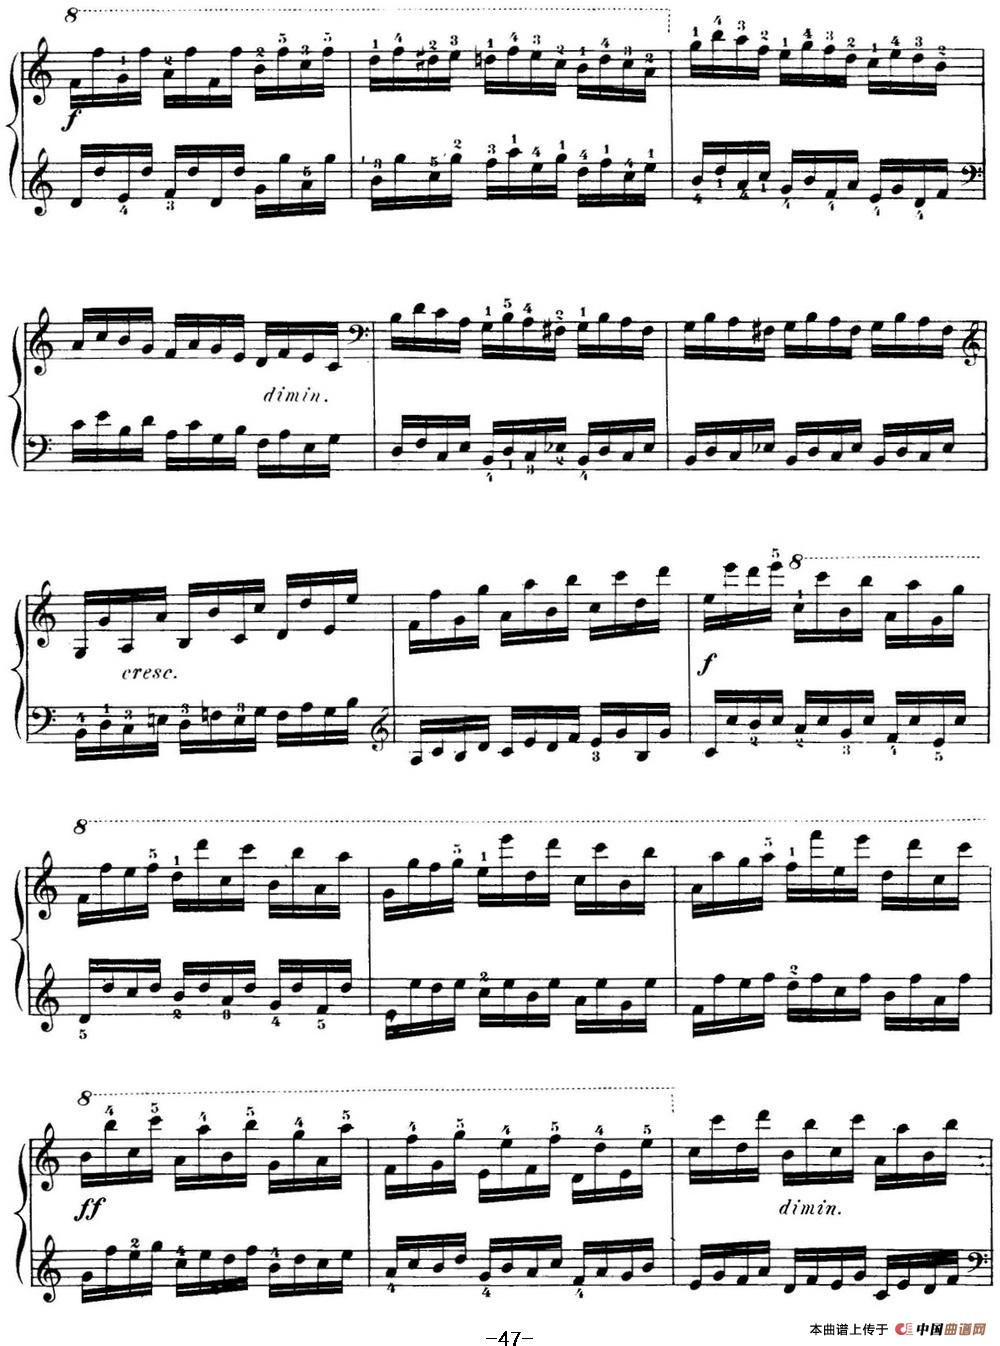 40首车尔尼Op.299钢琴快速练习曲（NO.20）(1)_C299_页面_047.jpg